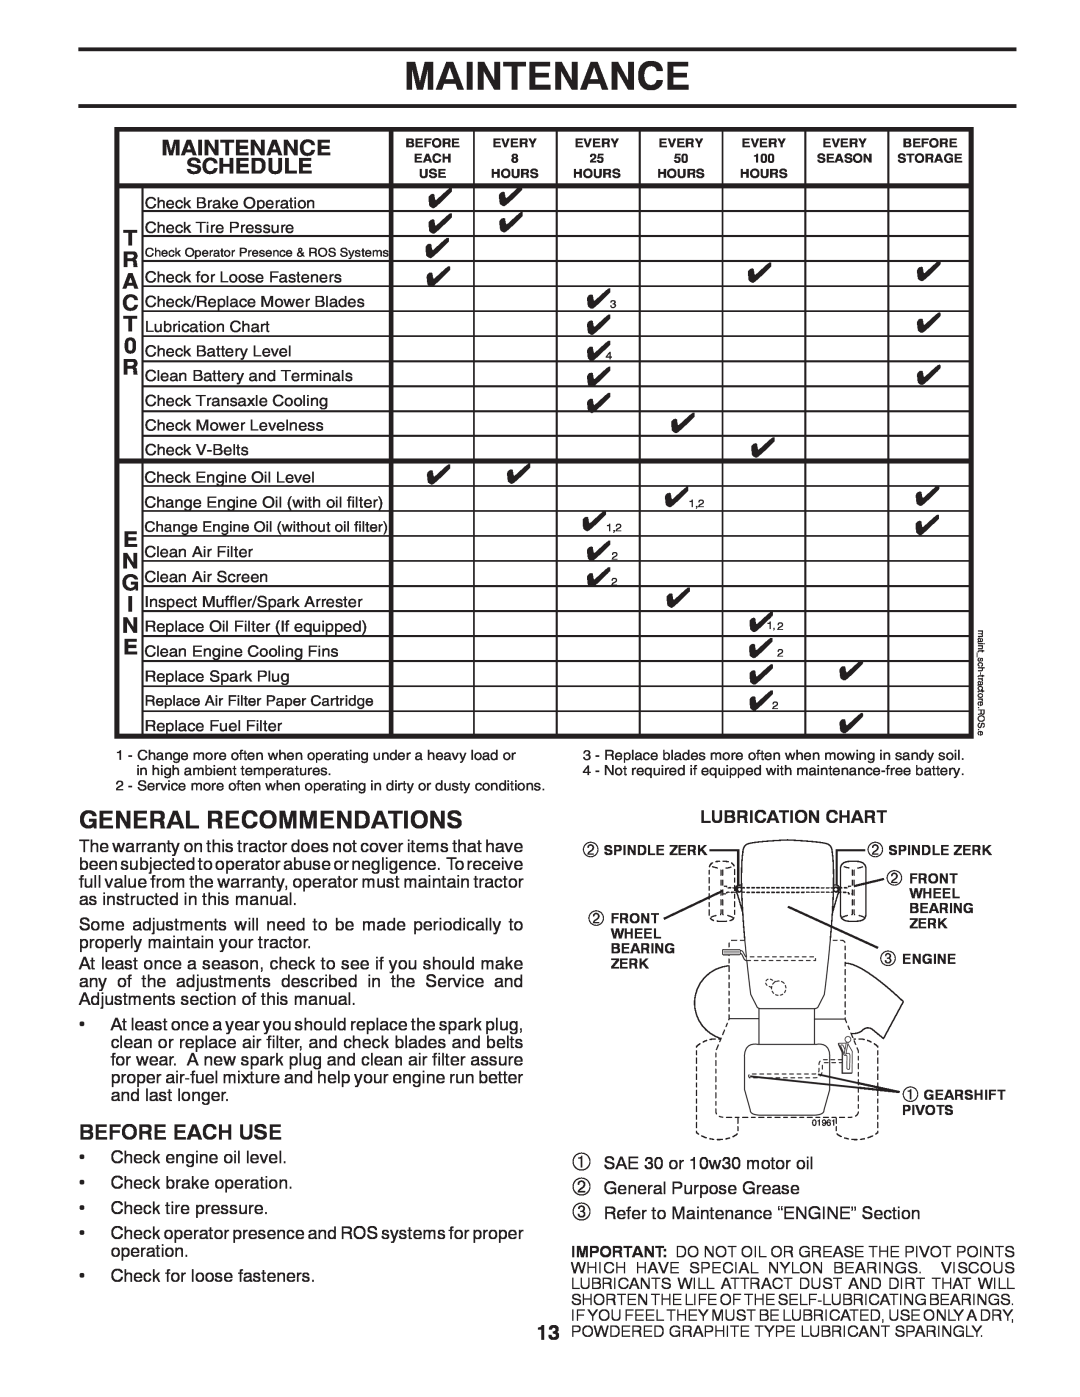 Poulan 424008 manual Maintenance, Lubrication Chart 